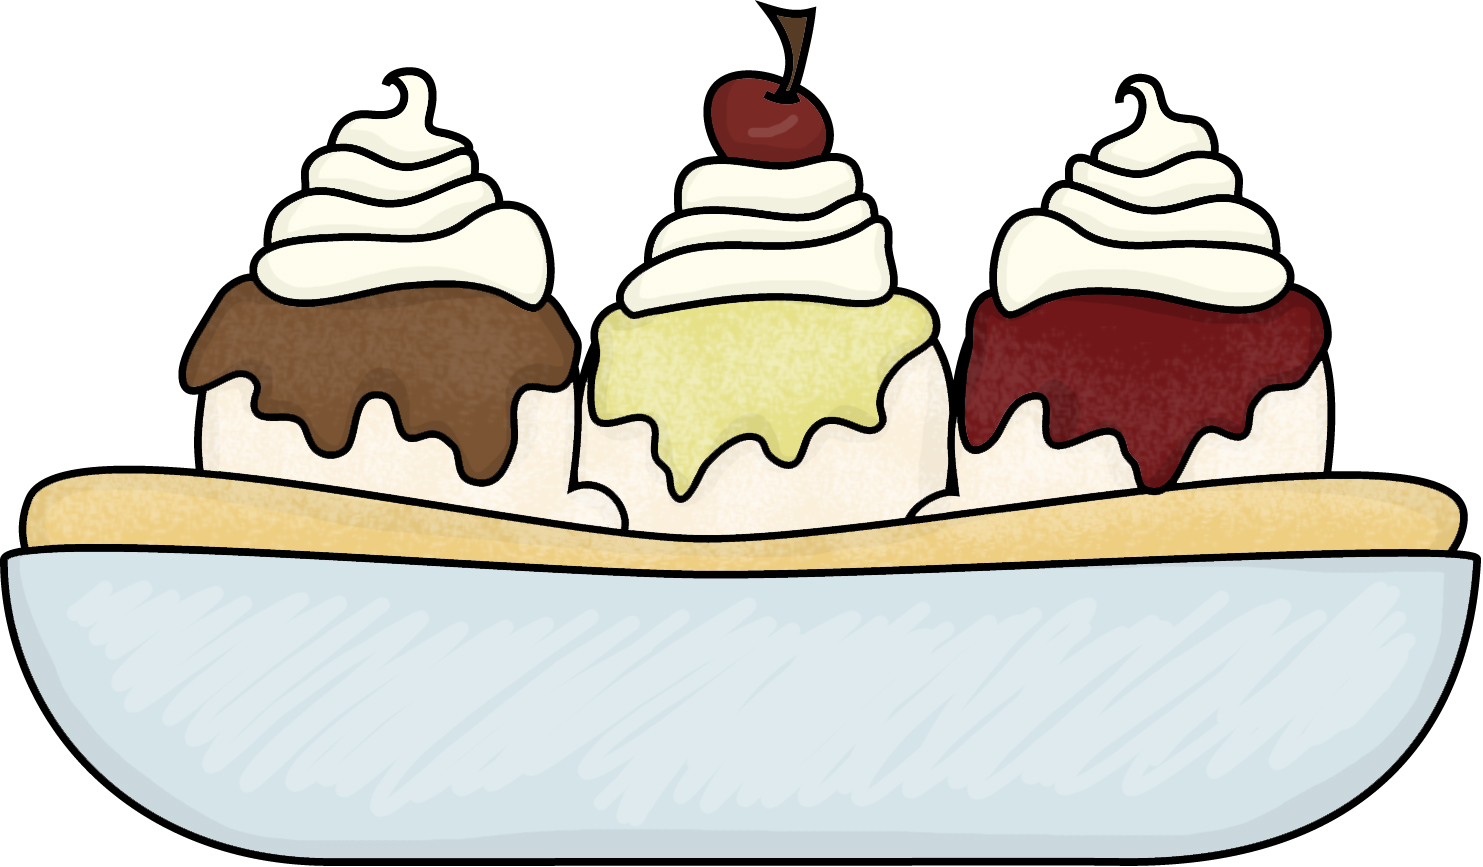 Ice Cream Scoop Clipart Png Ice Cream Sundae Clip Art